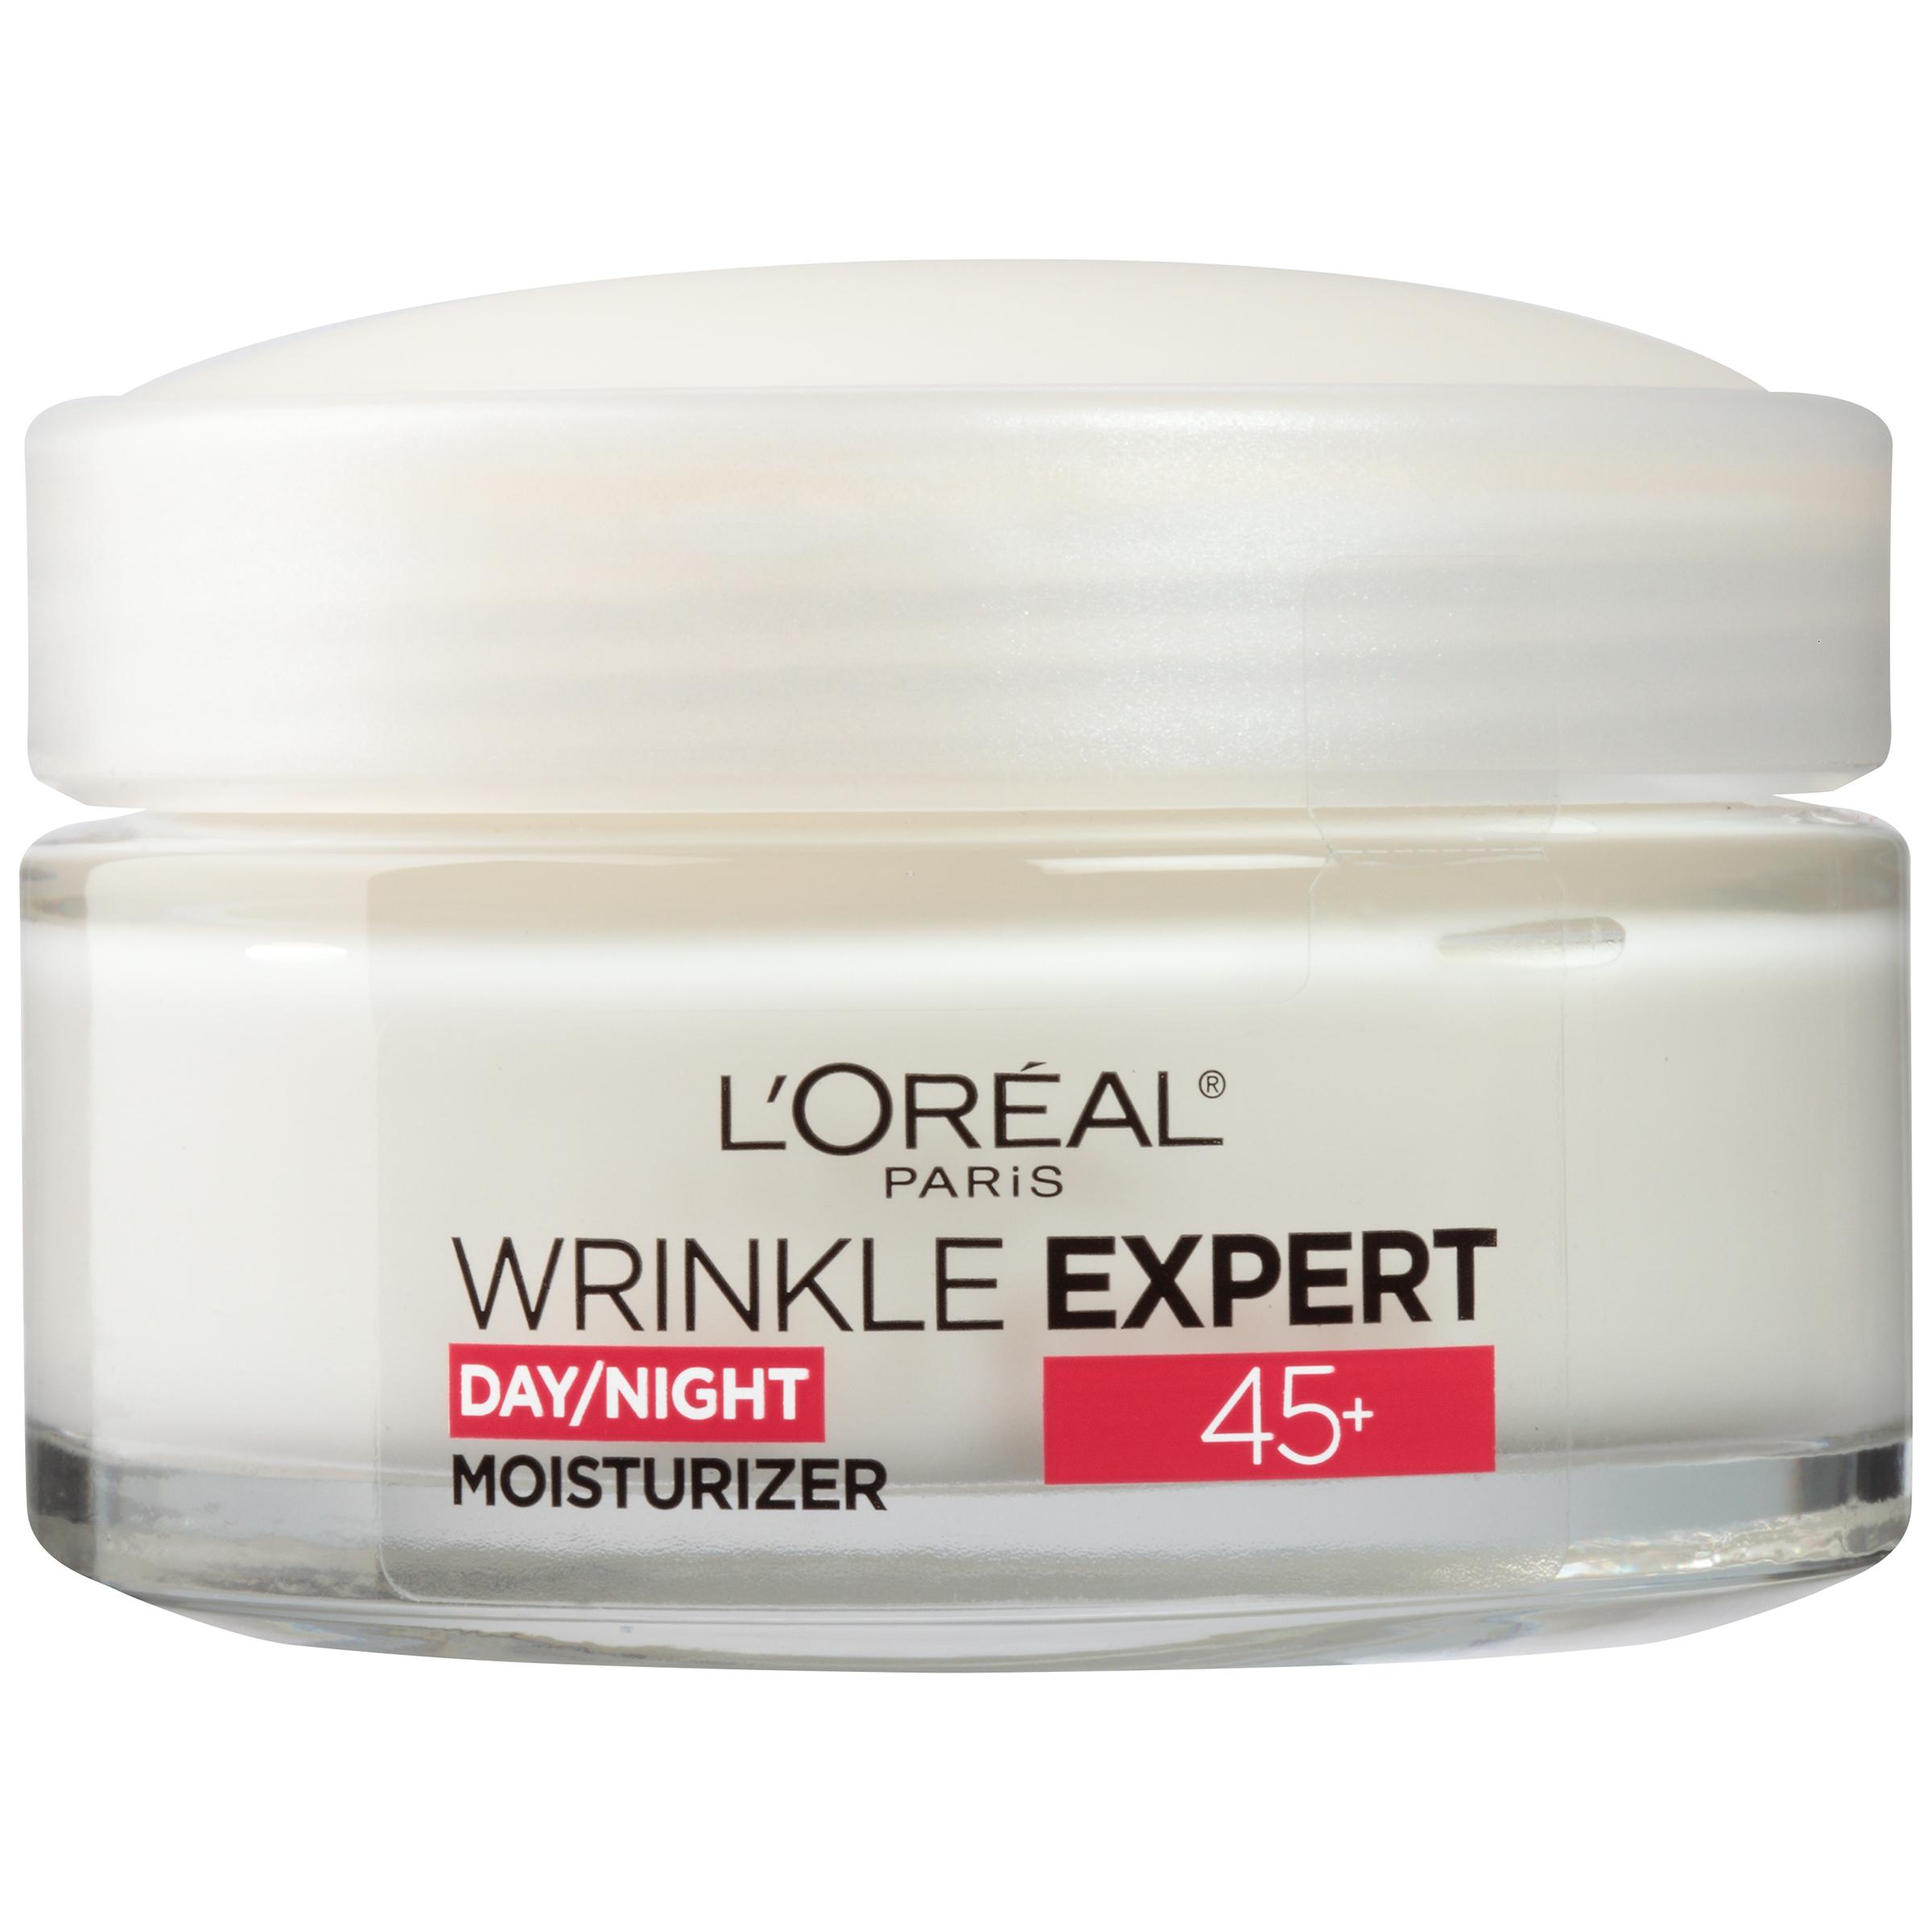 Wrinkle Expert 45+ Moisturizer